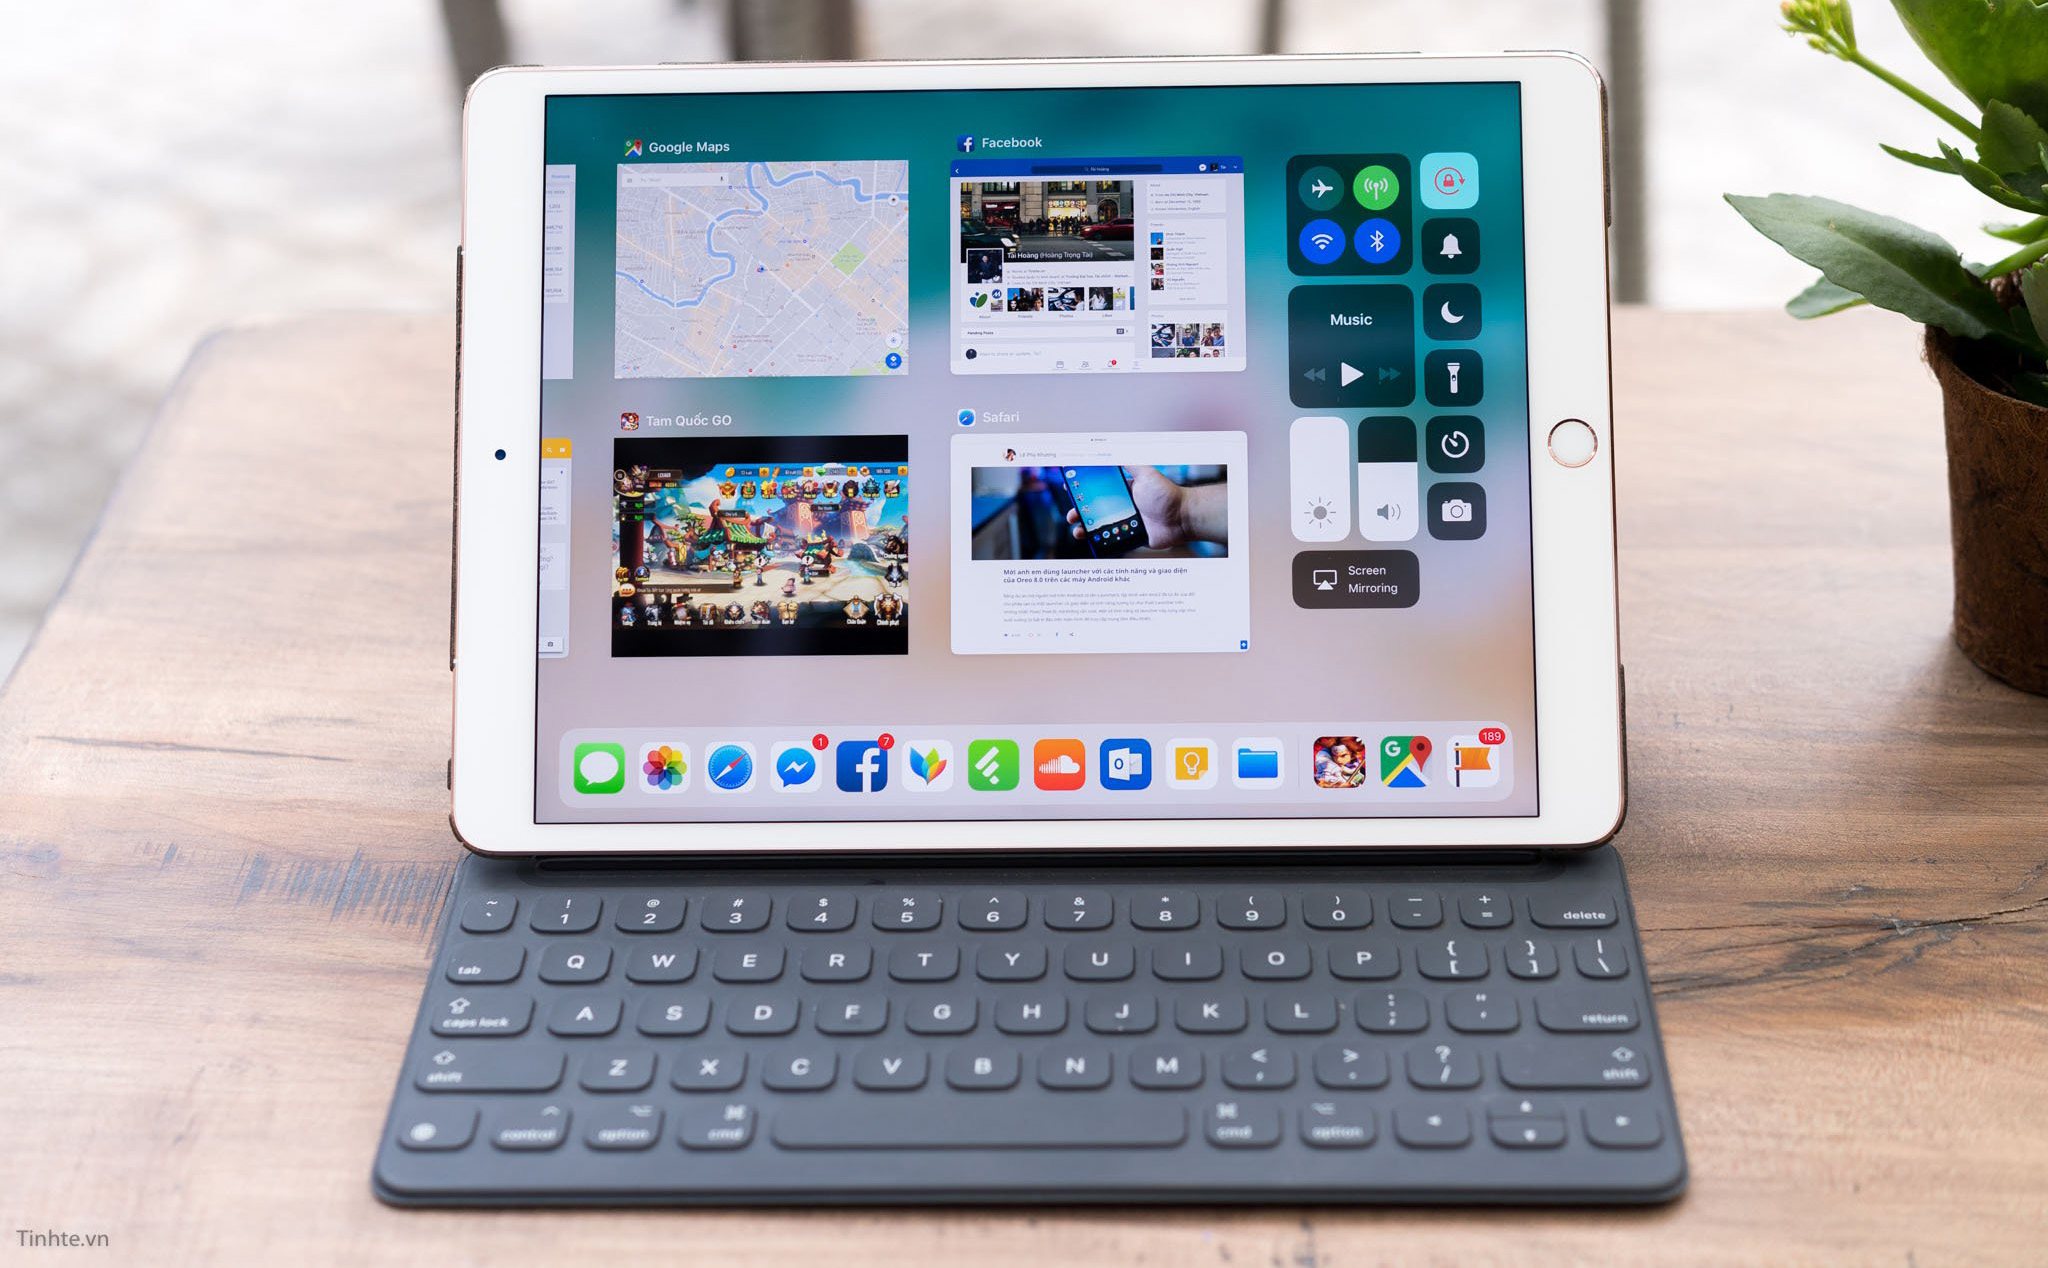 Adobe đang làm một bản Photoshop "đầy đủ" cho iPad, năm sau ra mắt?